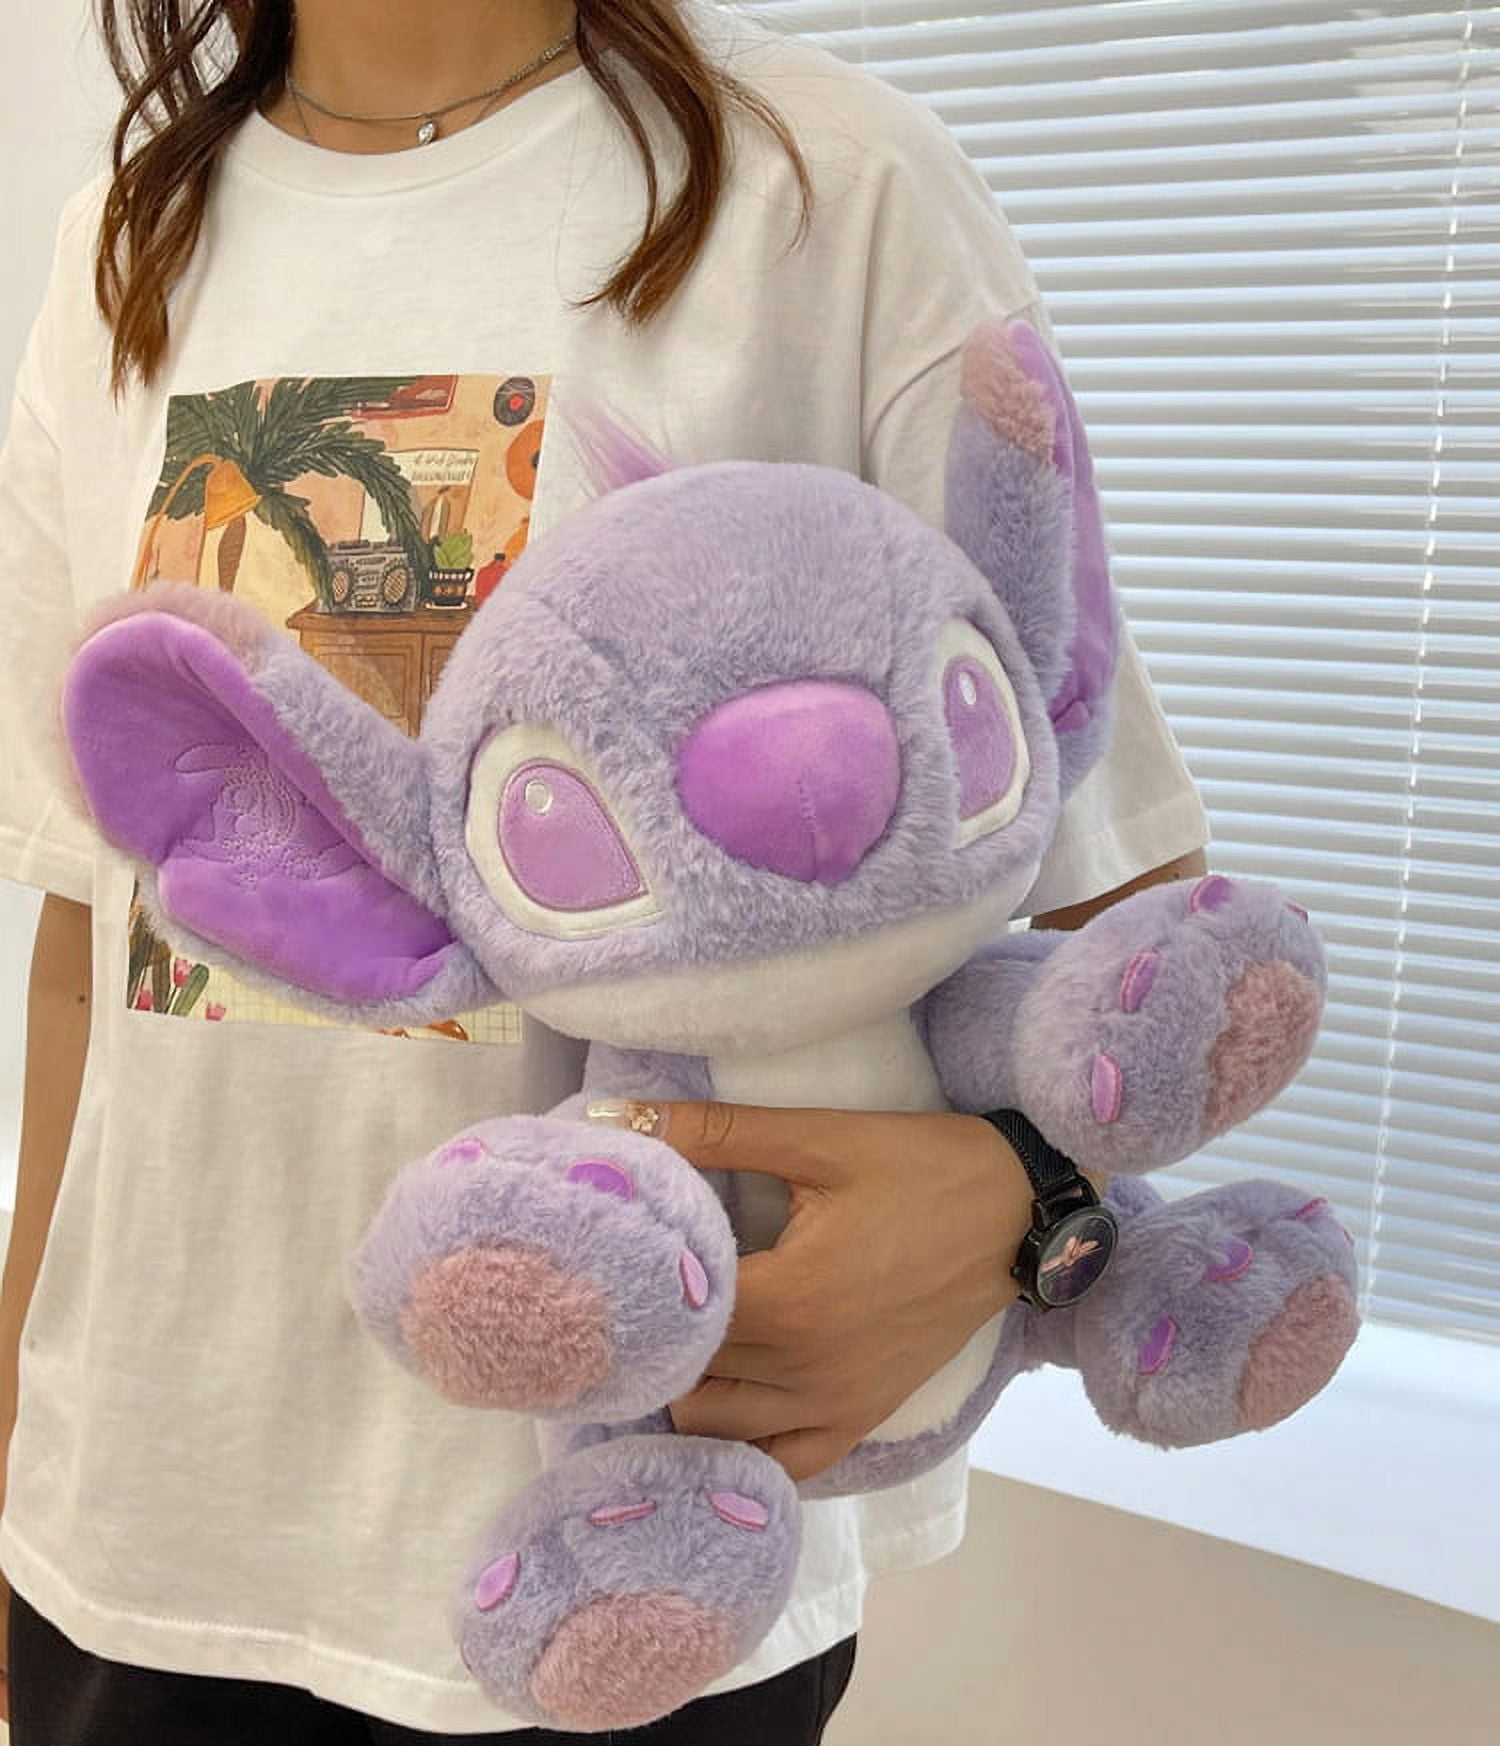 12 Lilo & Stitch Purple Stitch Plush Toy Stuffed Soft Doll Gift Collection